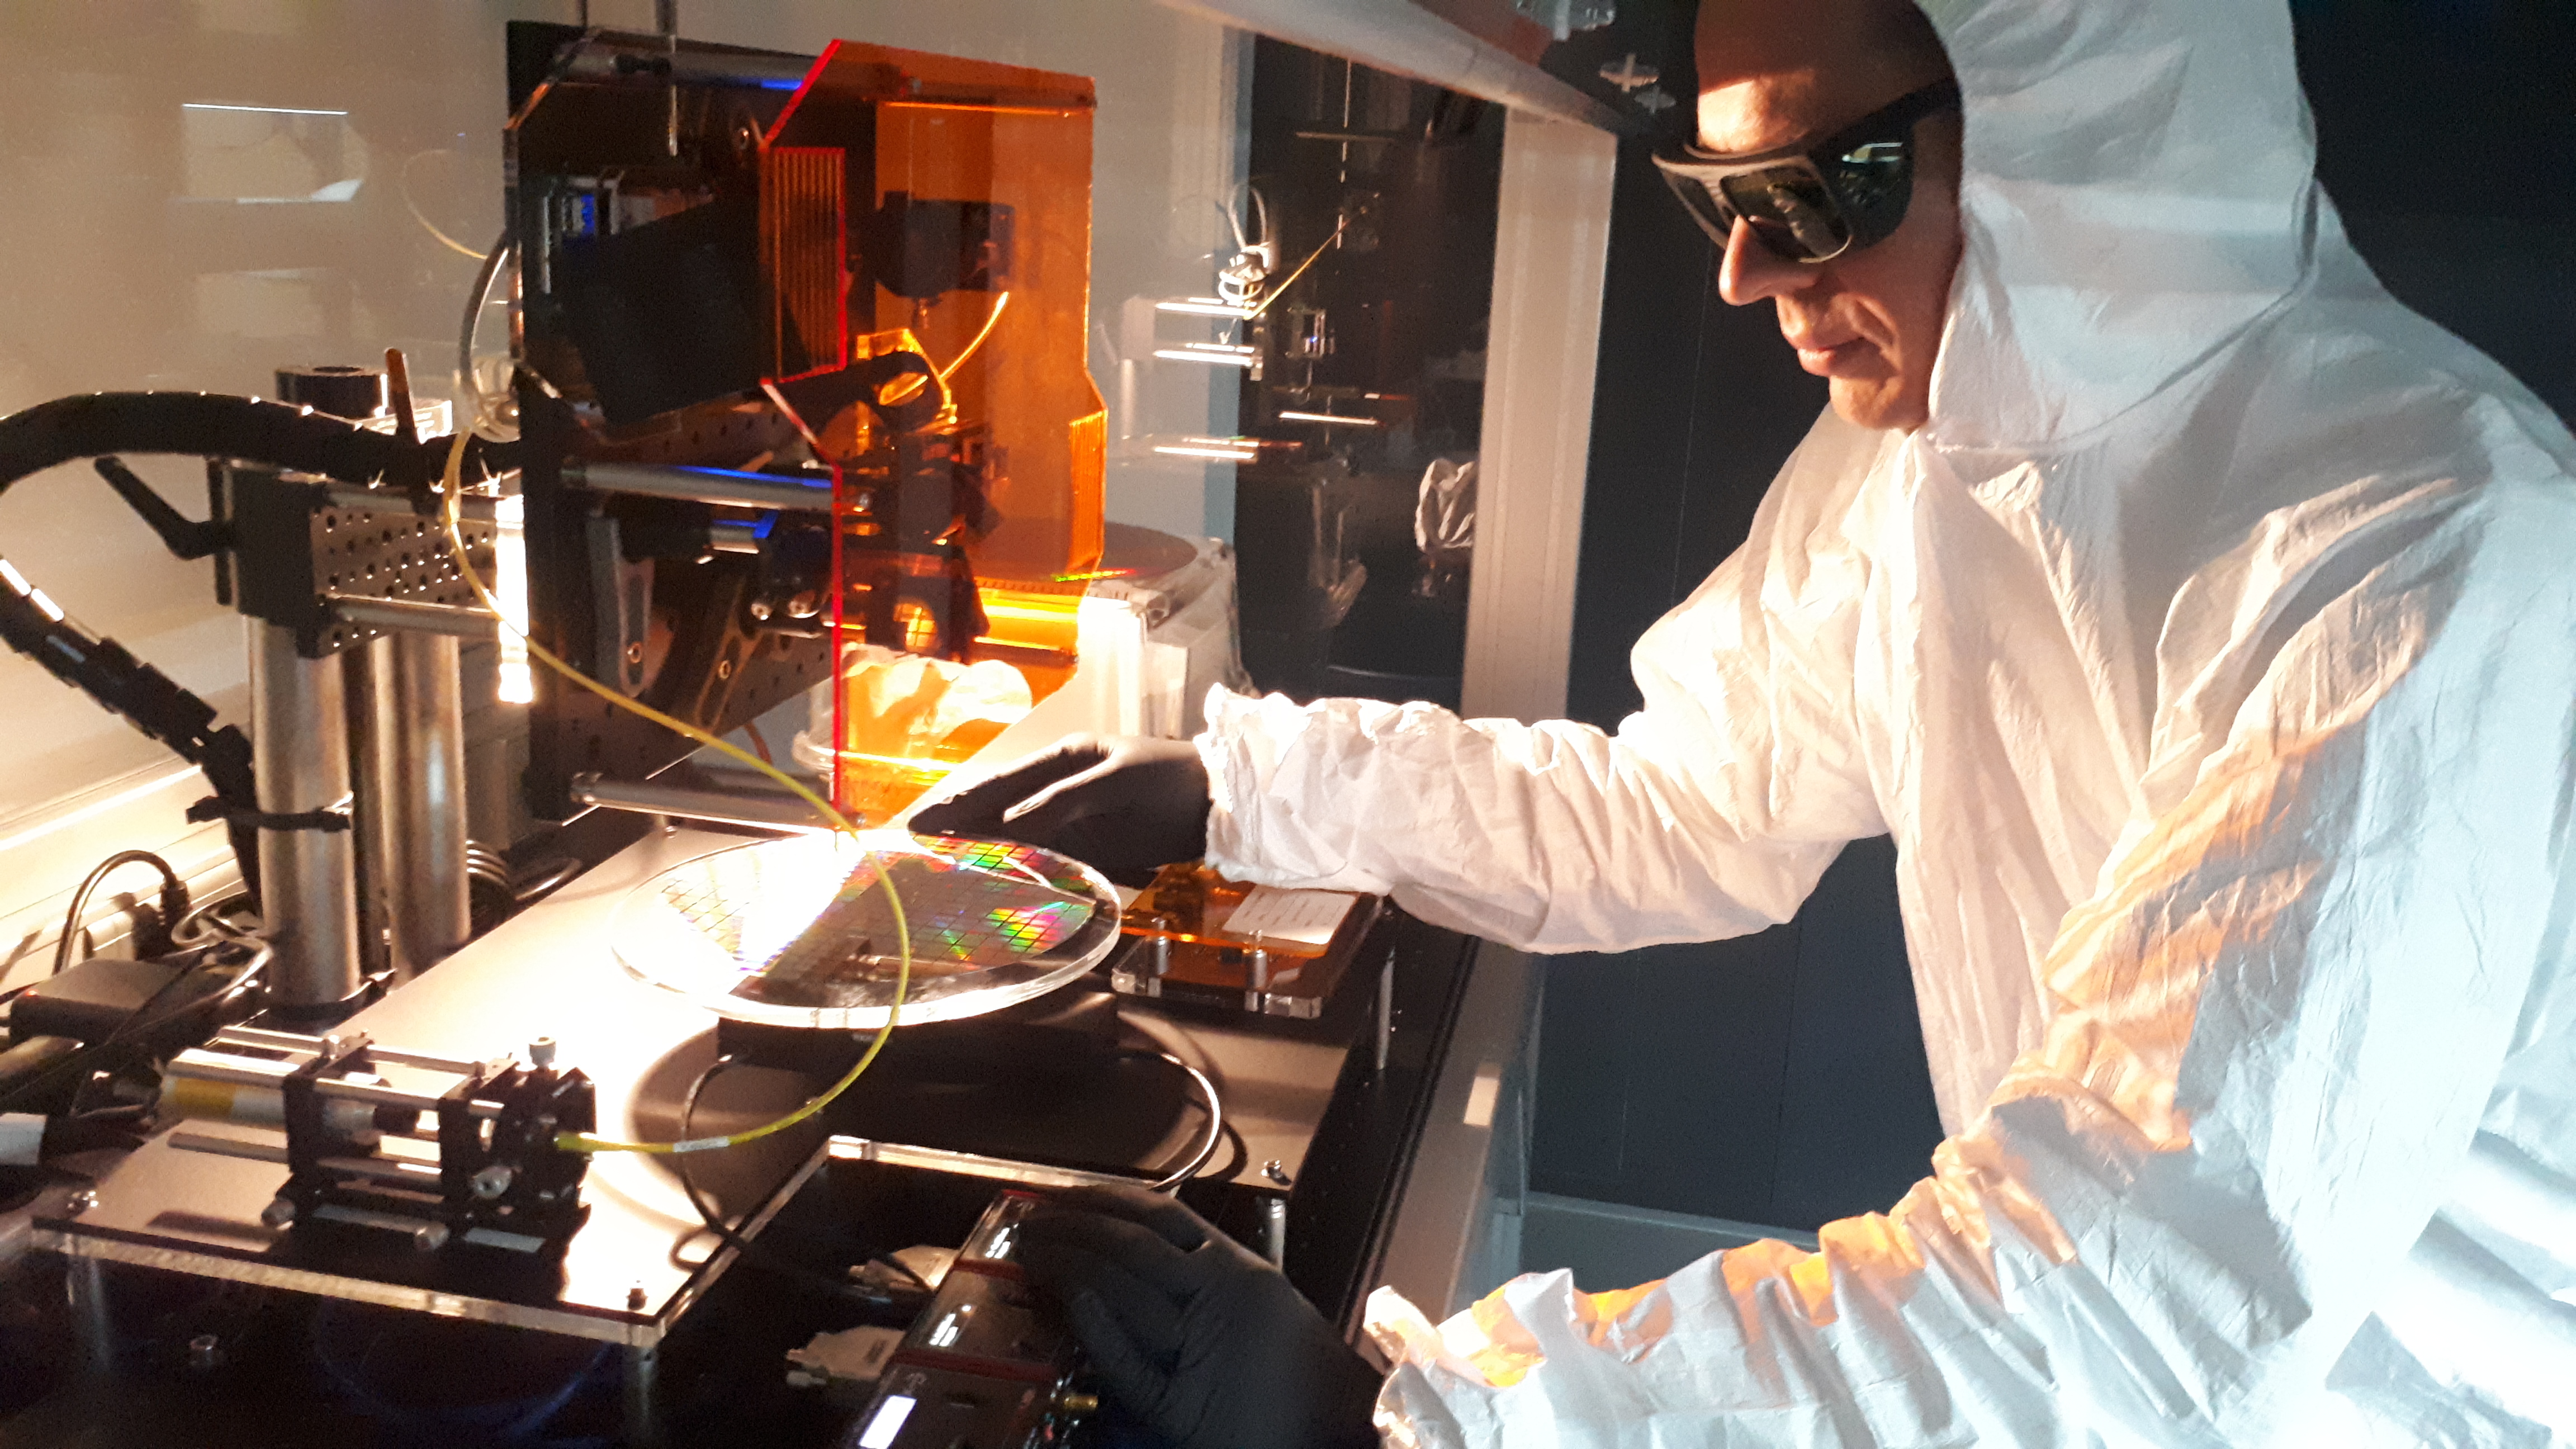 Wissenschaftler Christopher Taudt arbeitet an einem Aufbau zur optischen Analyse von Wafern in der Reinraumstrecke des Fraunhofer AZOM. Neue Methoden im Herstellungsprozess sollen ihre Qualität erhöhen und elektronische Komponenten zuverlässiger machen. 